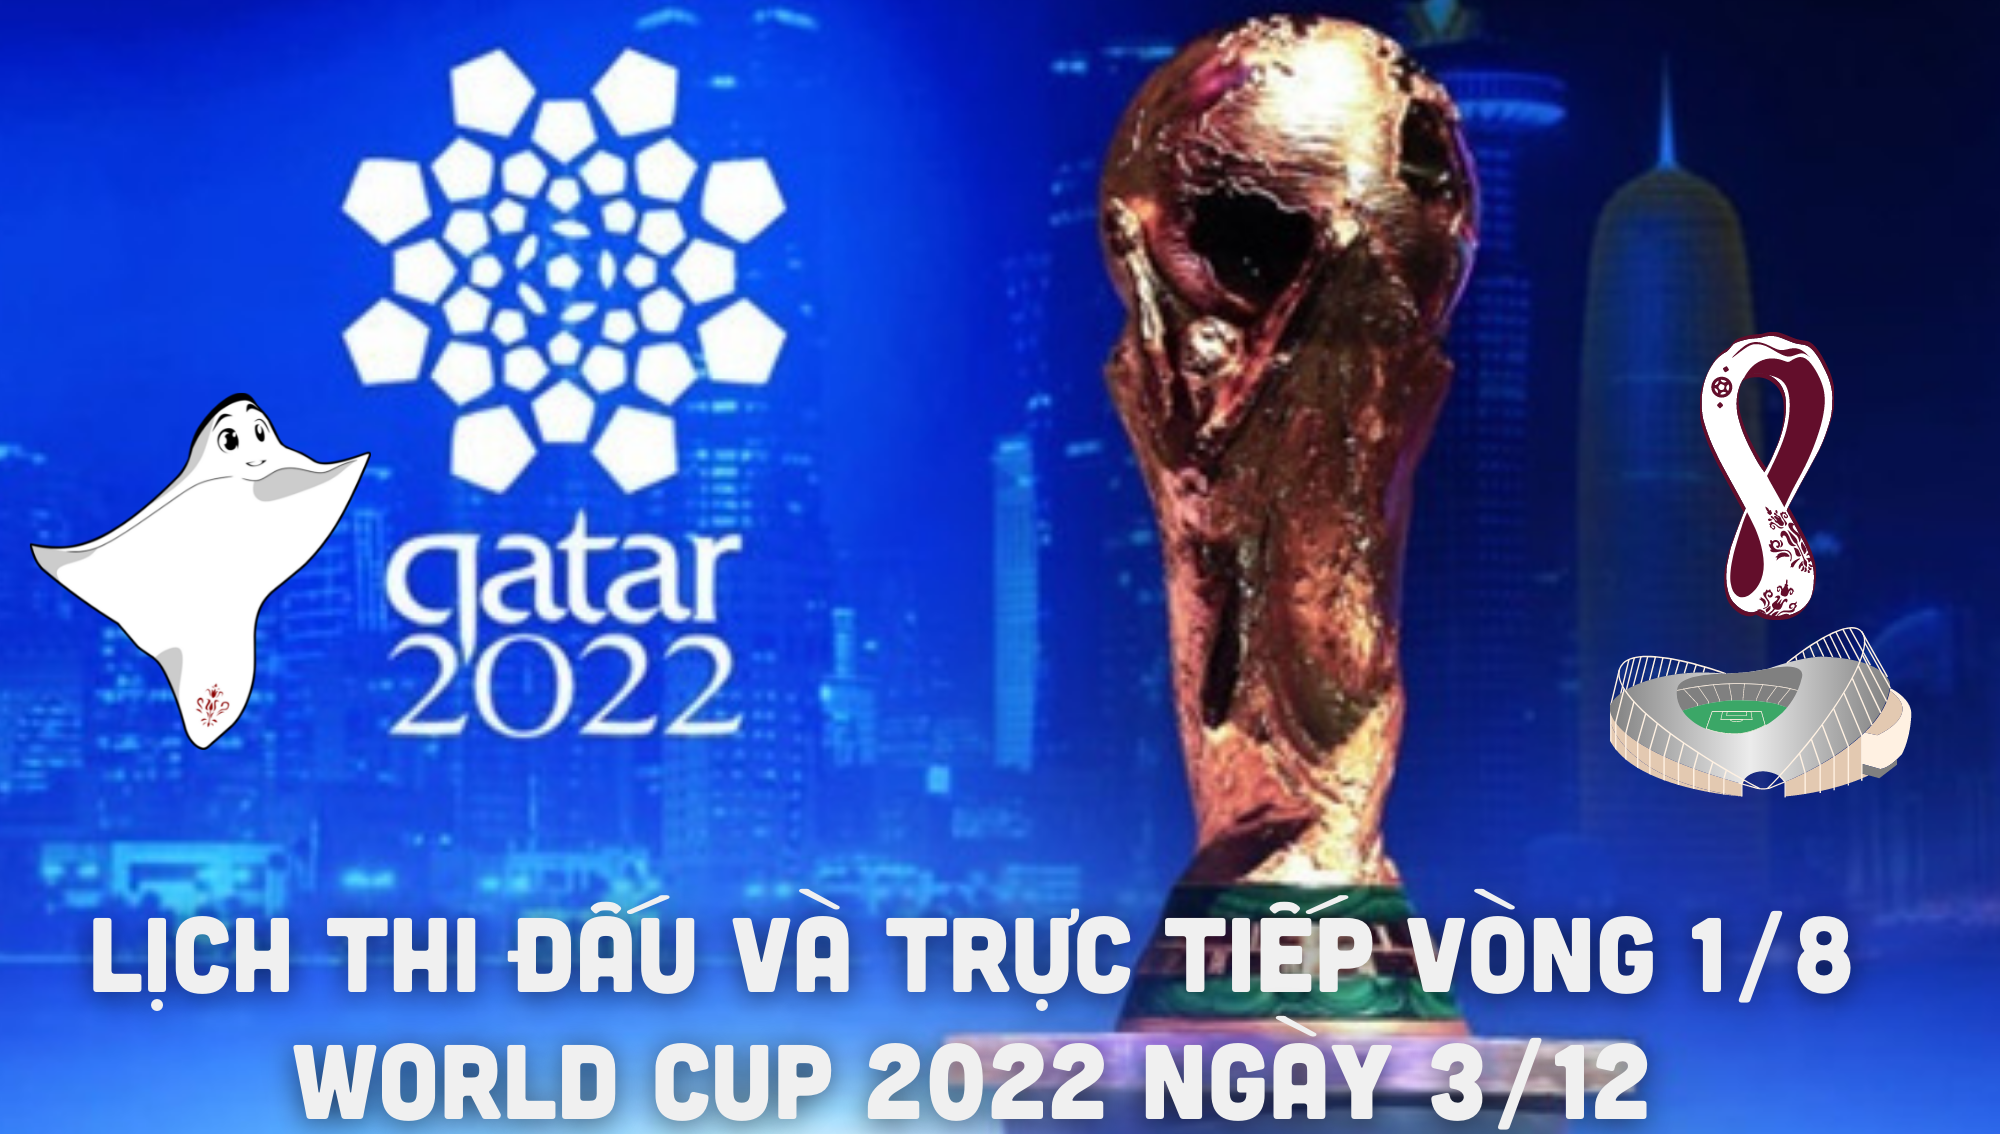 Lịch thi đấu và trực tiếp vòng 1/8 World Cup 2022 ngày 3/12